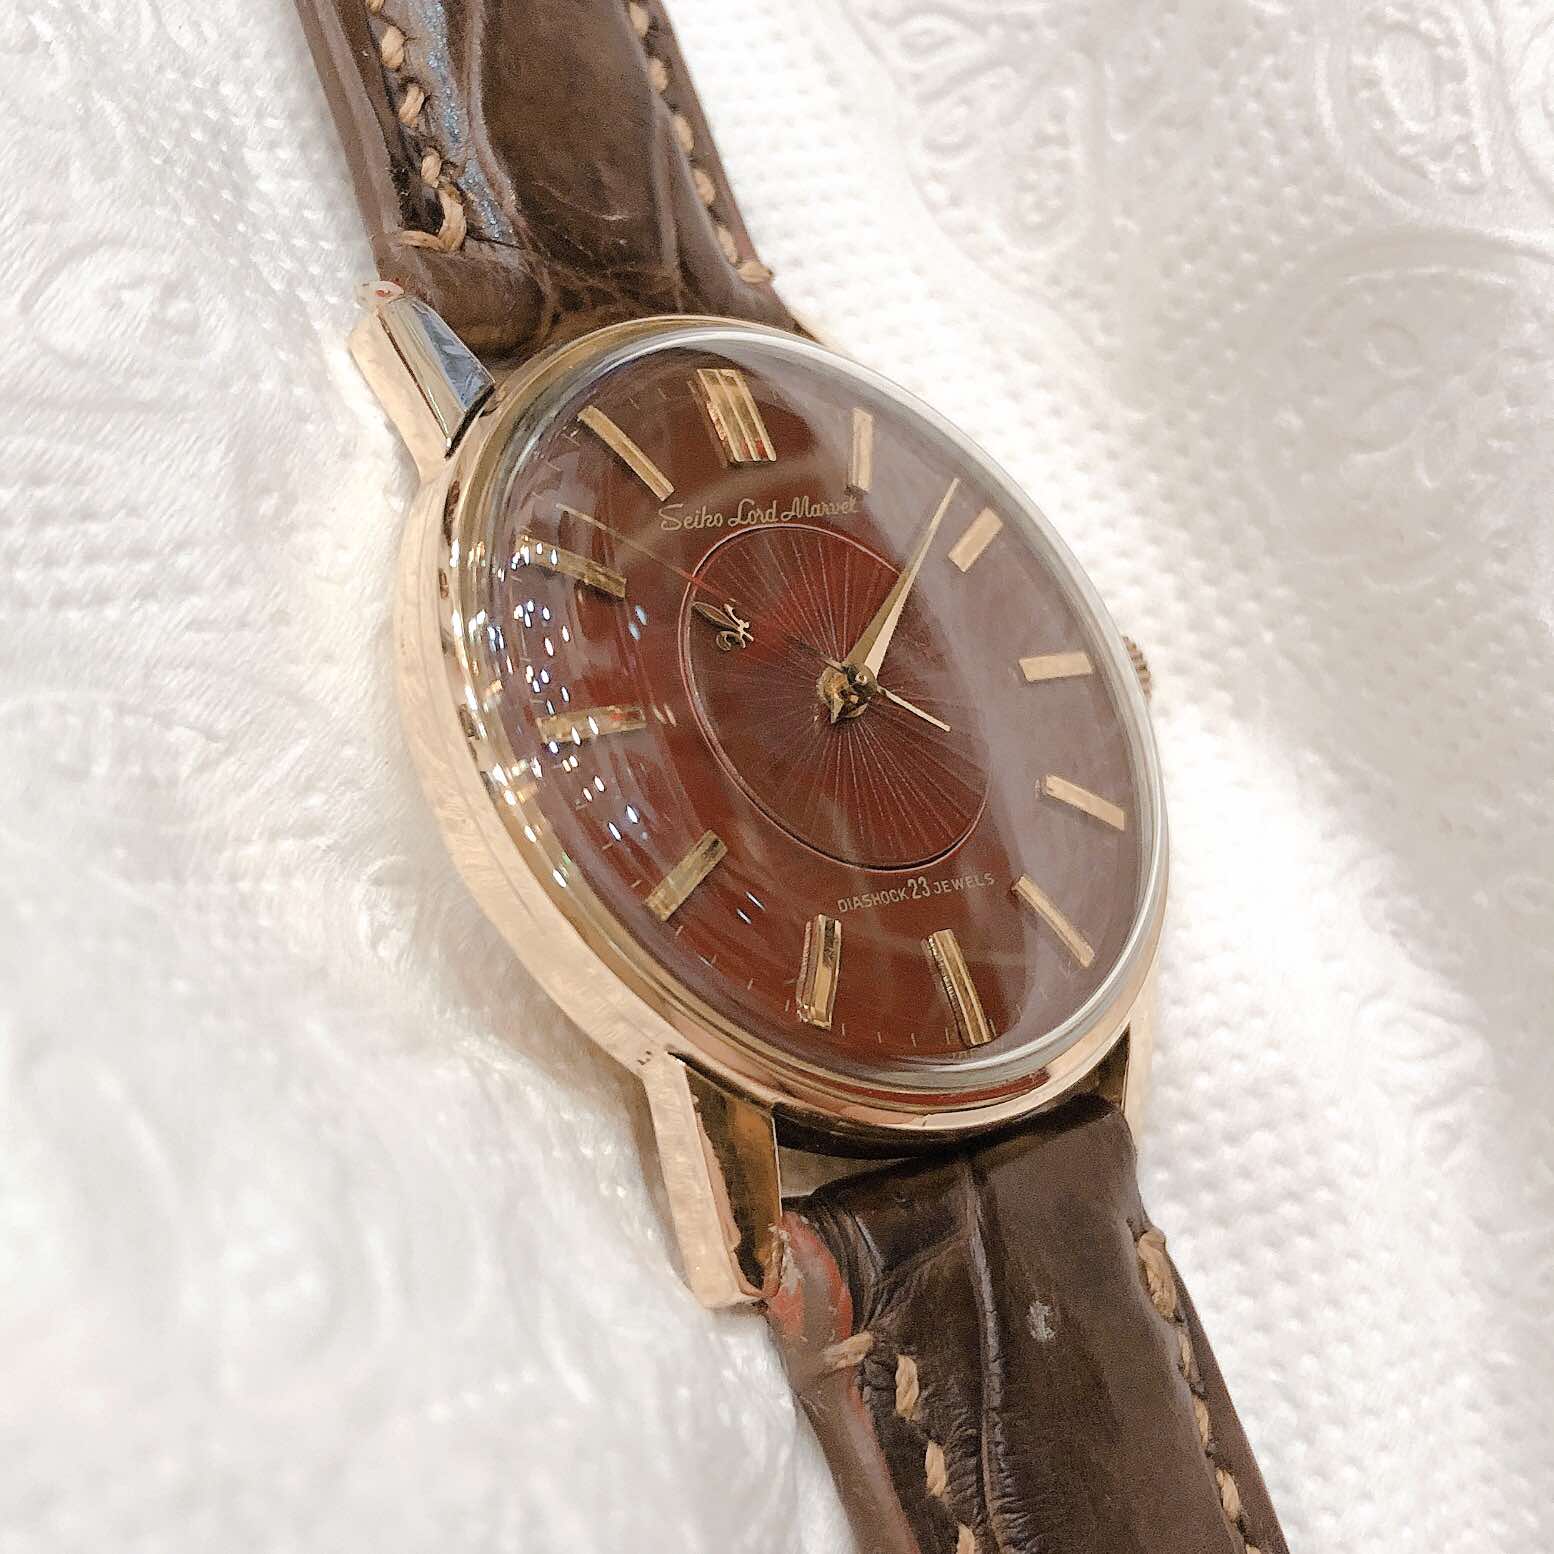 Đồng hồ cổ Seiko Lord Marvel lên dây mặt huyết 14k goldfilled chính hãng nhật bản